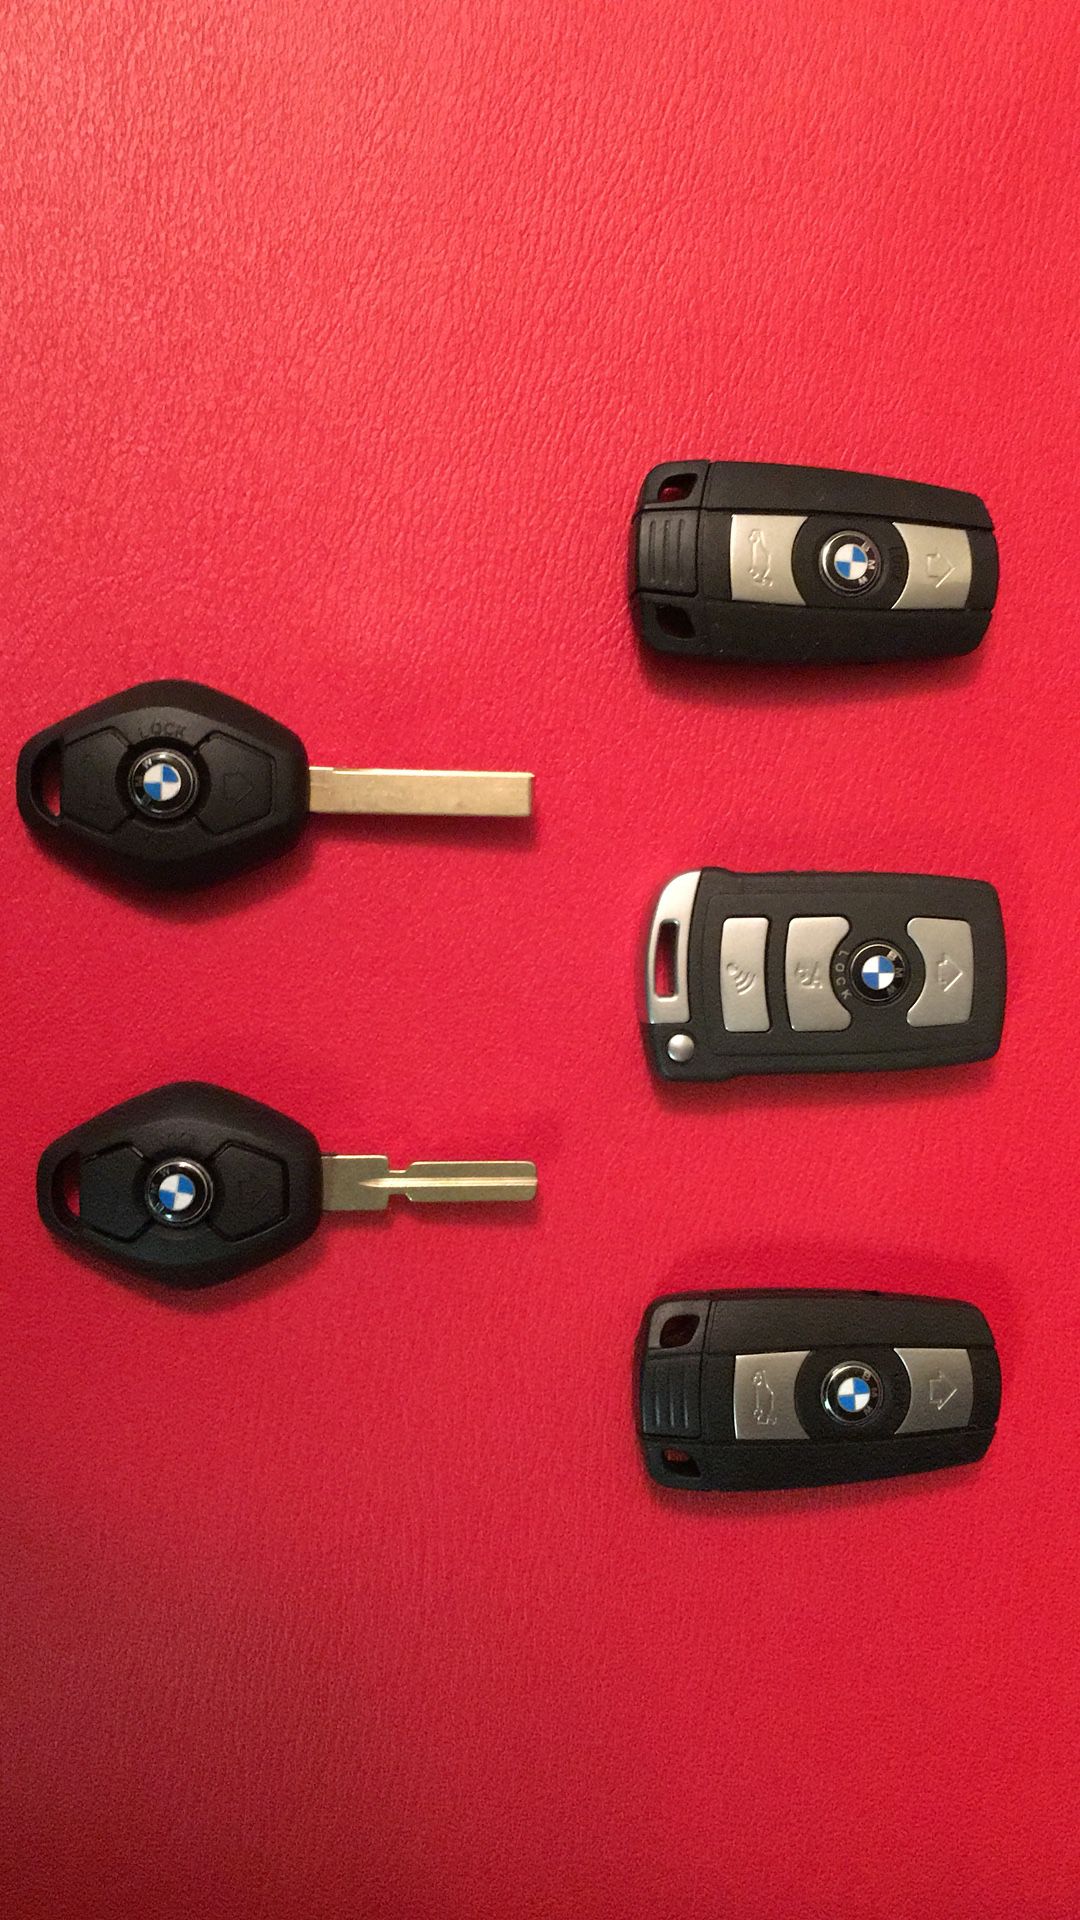 Car keys/key programer/car remotes/key fob/bmw keys/mercedes keys/porshe keys/nissan keys/toyota keys/dodge keys/remote programing/locksmith/